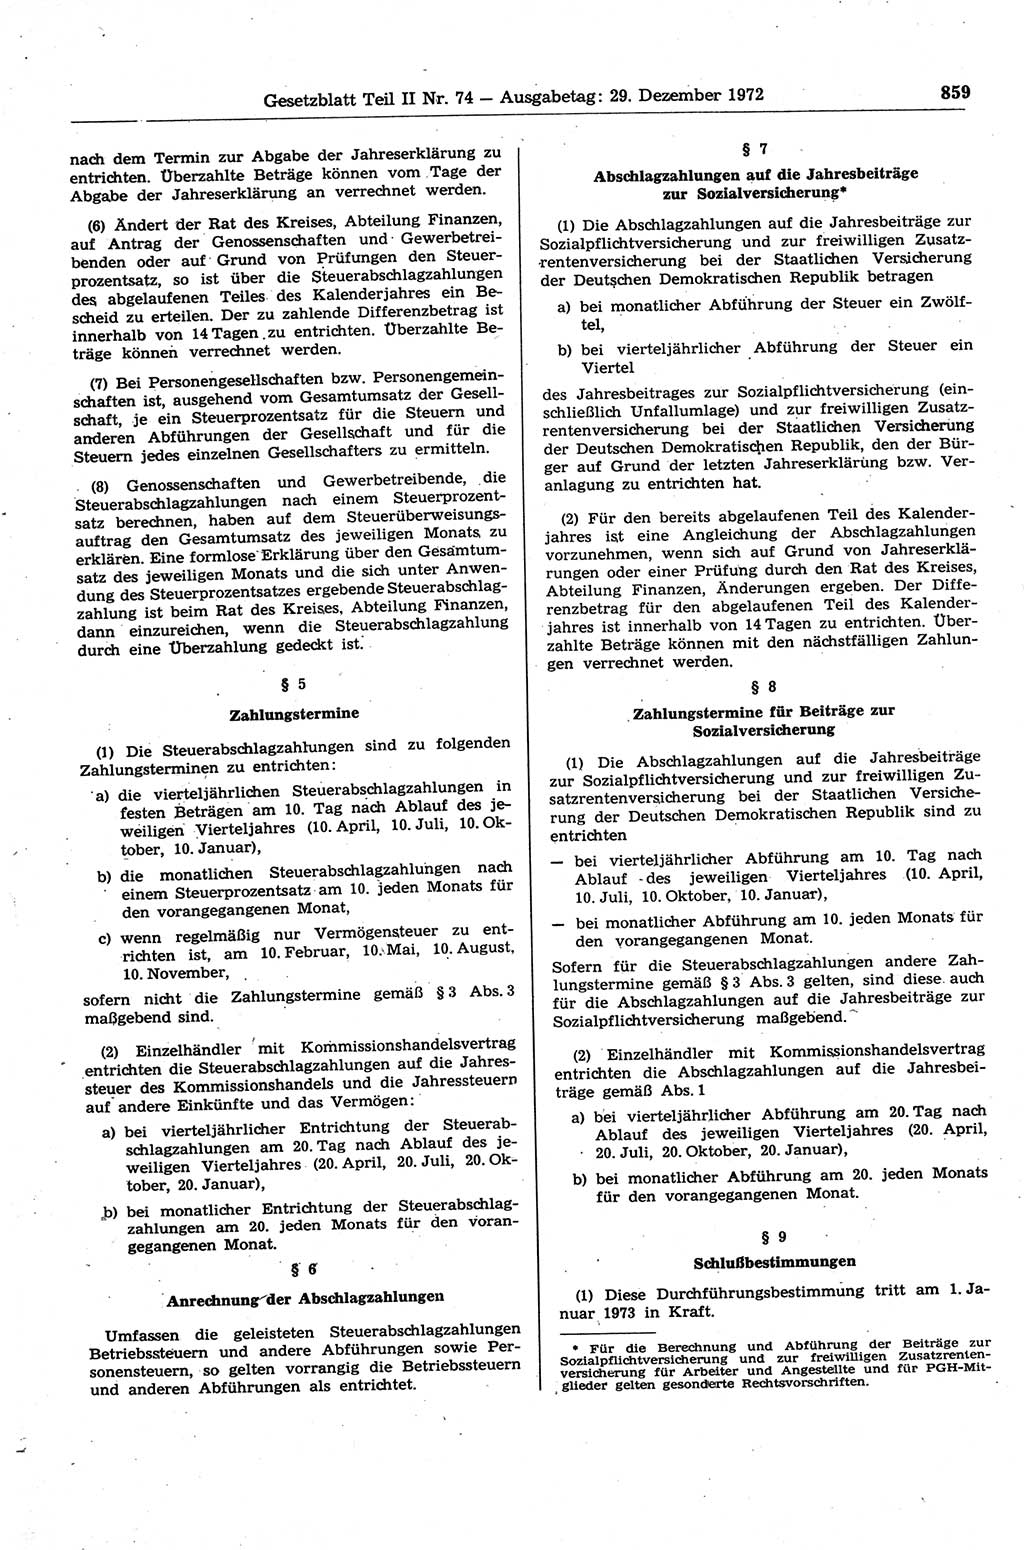 Gesetzblatt (GBl.) der Deutschen Demokratischen Republik (DDR) Teil ⅠⅠ 1972, Seite 859 (GBl. DDR ⅠⅠ 1972, S. 859)